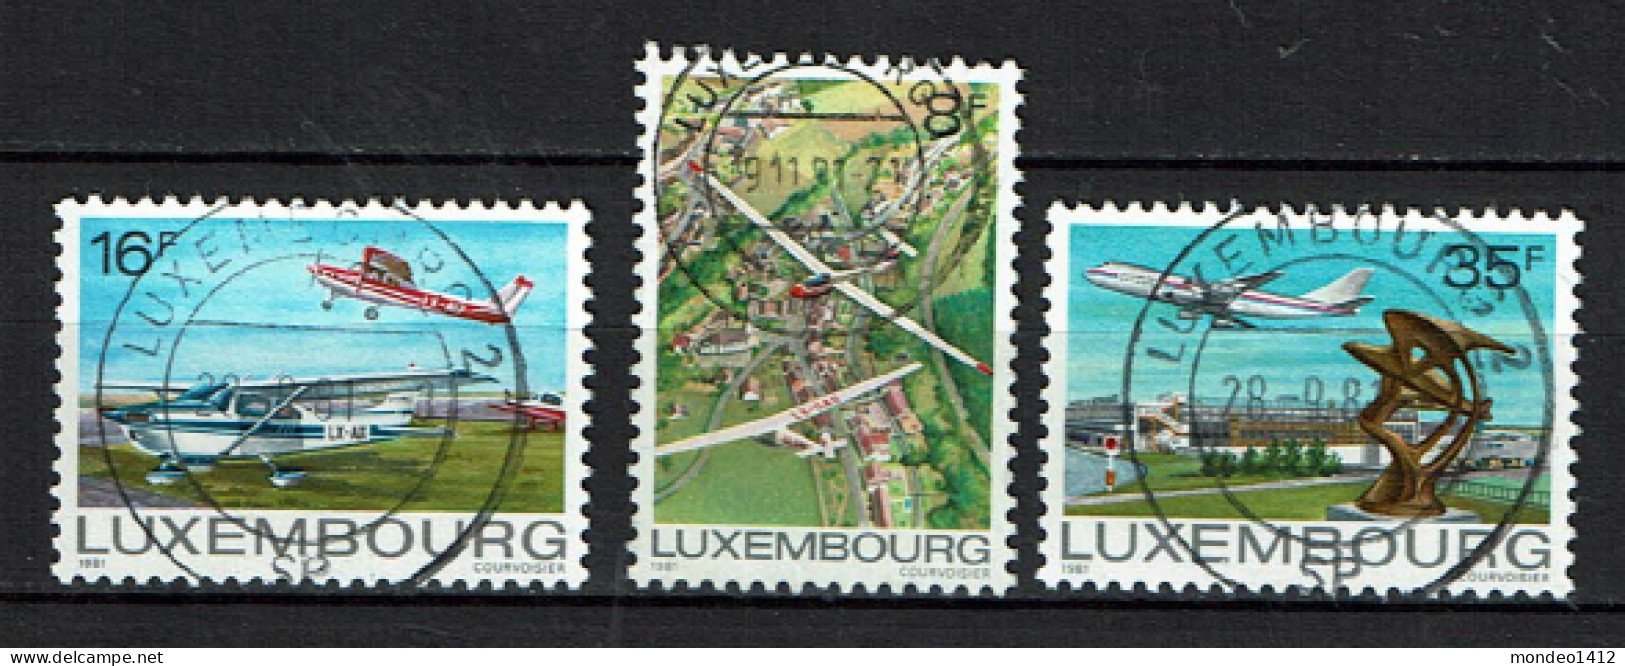 Luxembourg 1981 - YT 987/989 - Aviation, Airplanes, Luftfahrt - Gebruikt